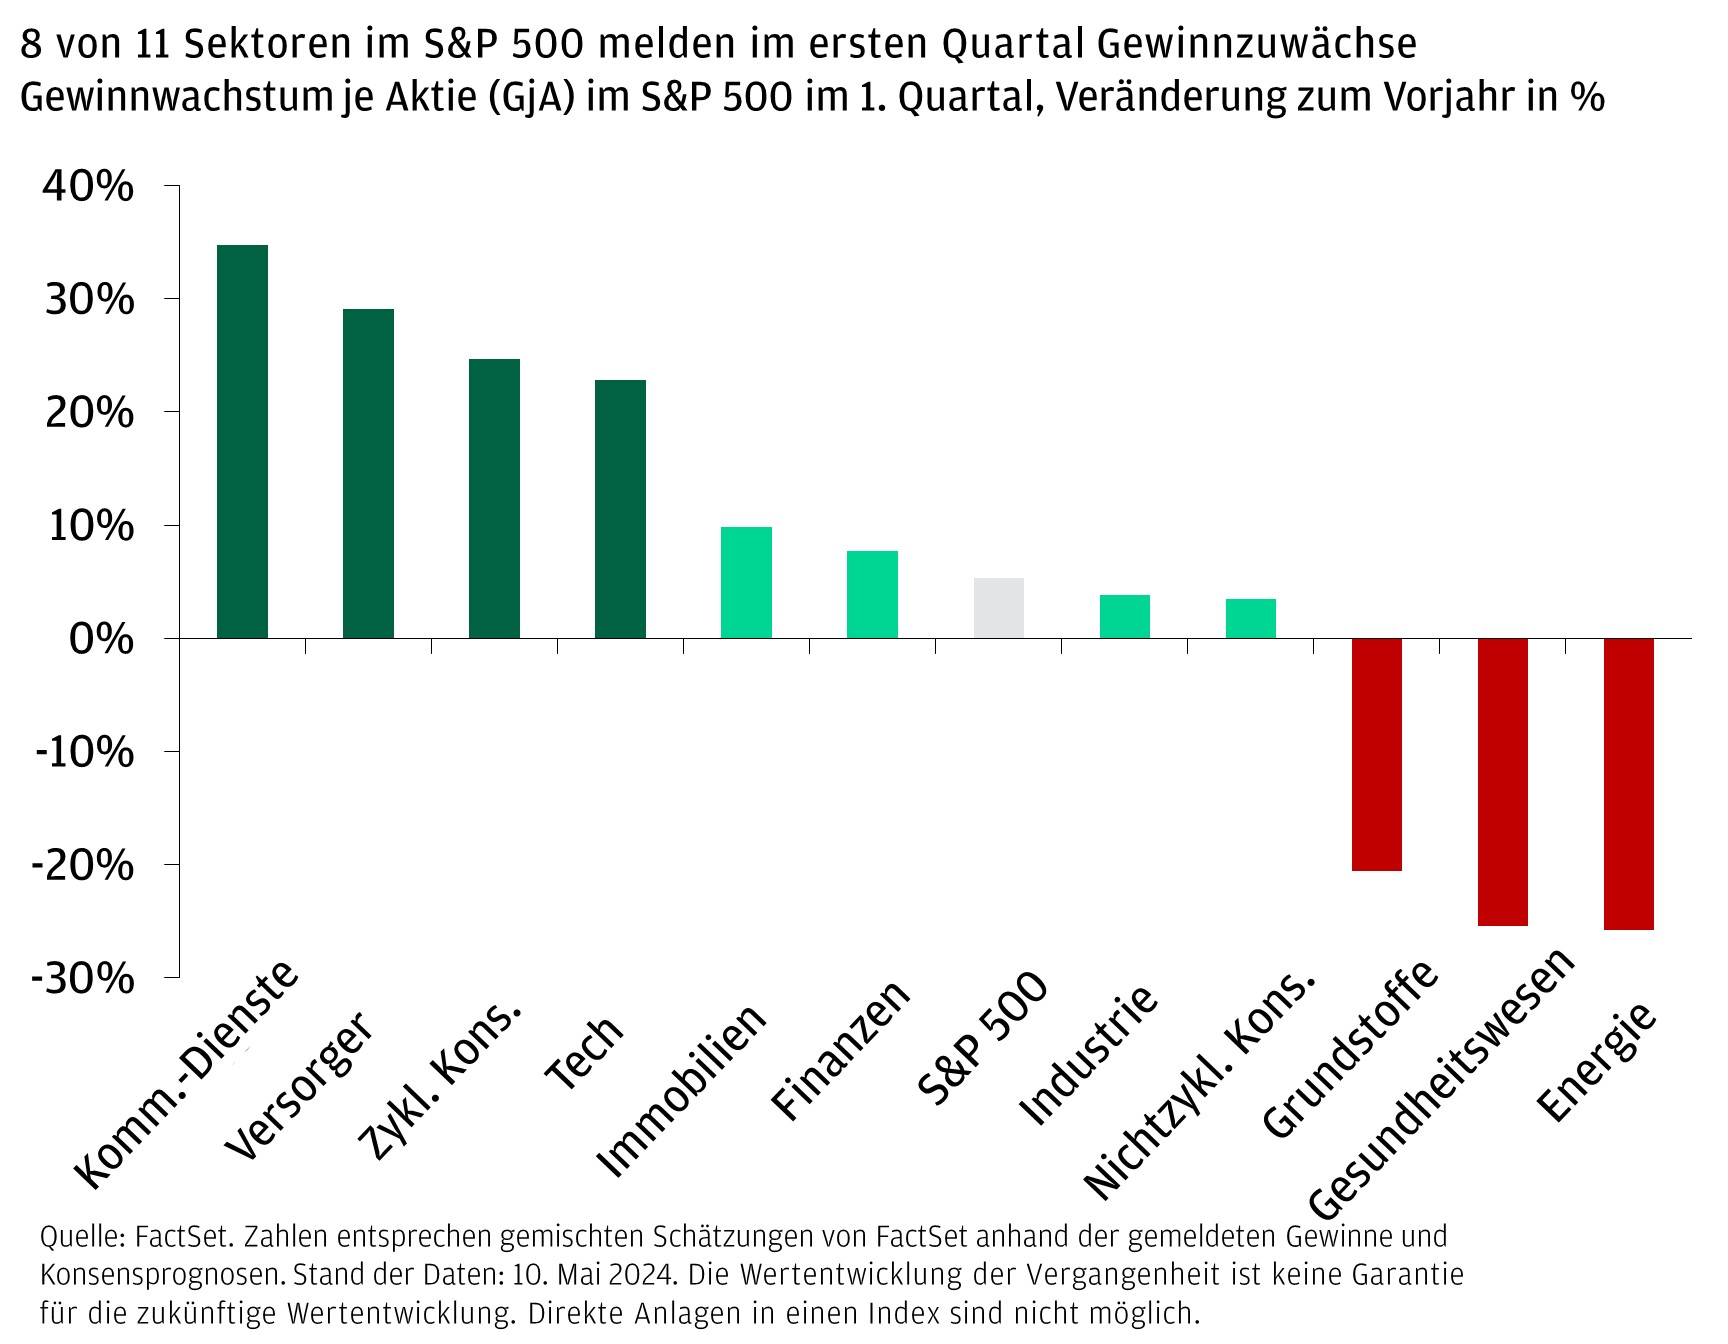 8 von 11 Sektoren im S&P 500 melden im ersten Quartal Gewinnzuwächse